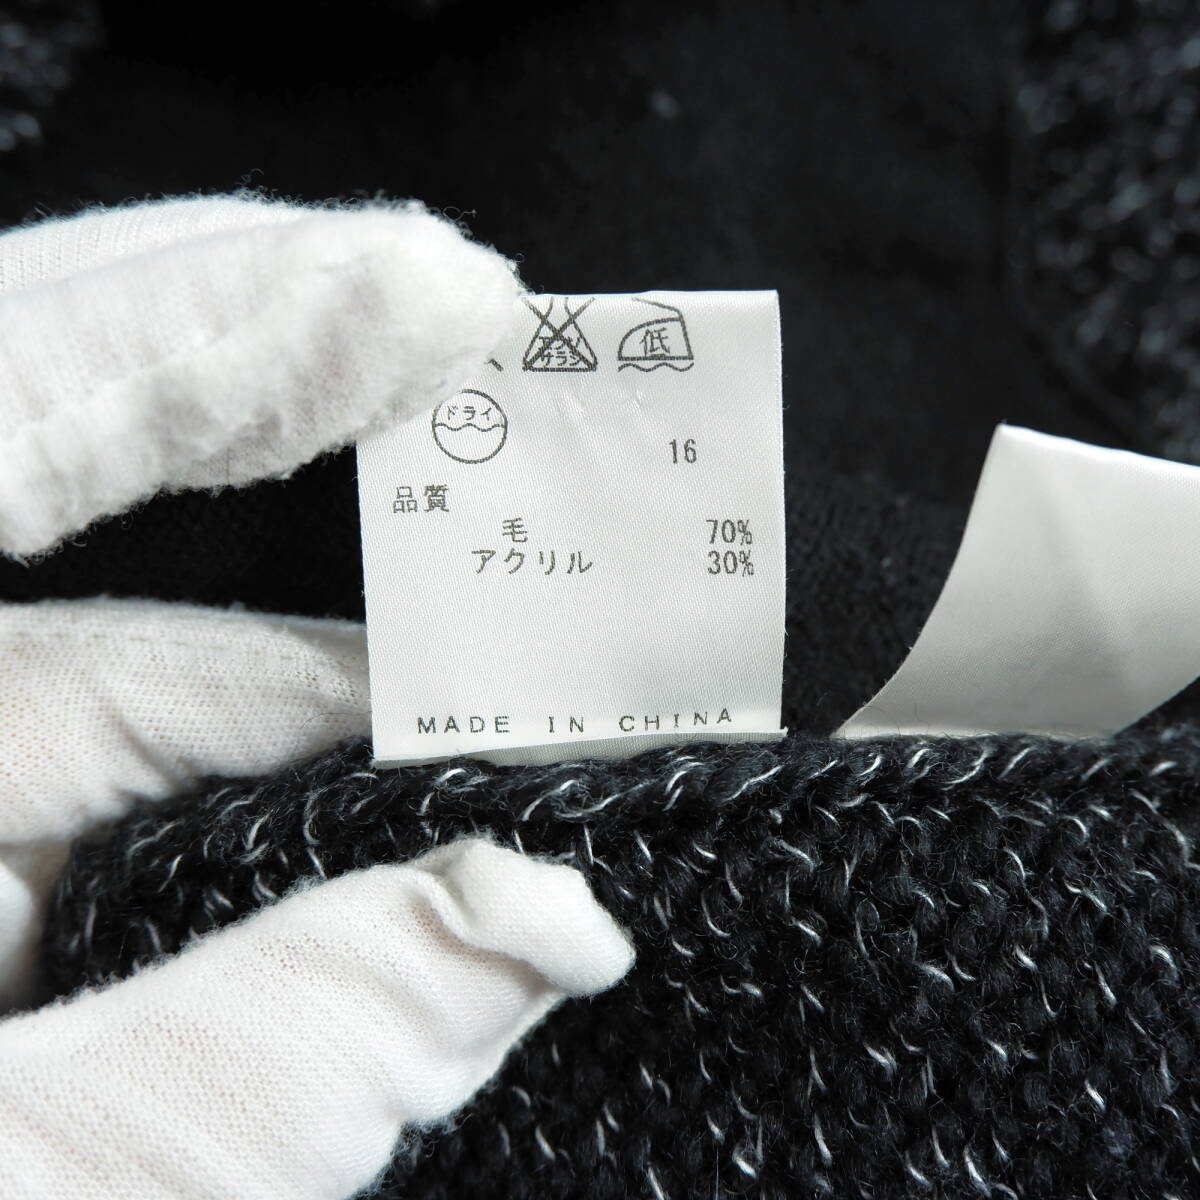 ◆美品 送料無料◆ CK Calvin Klein カルバンクライン ウール ニット ジップ ブルゾン セーター 黒 白 メンズ L 1534E0